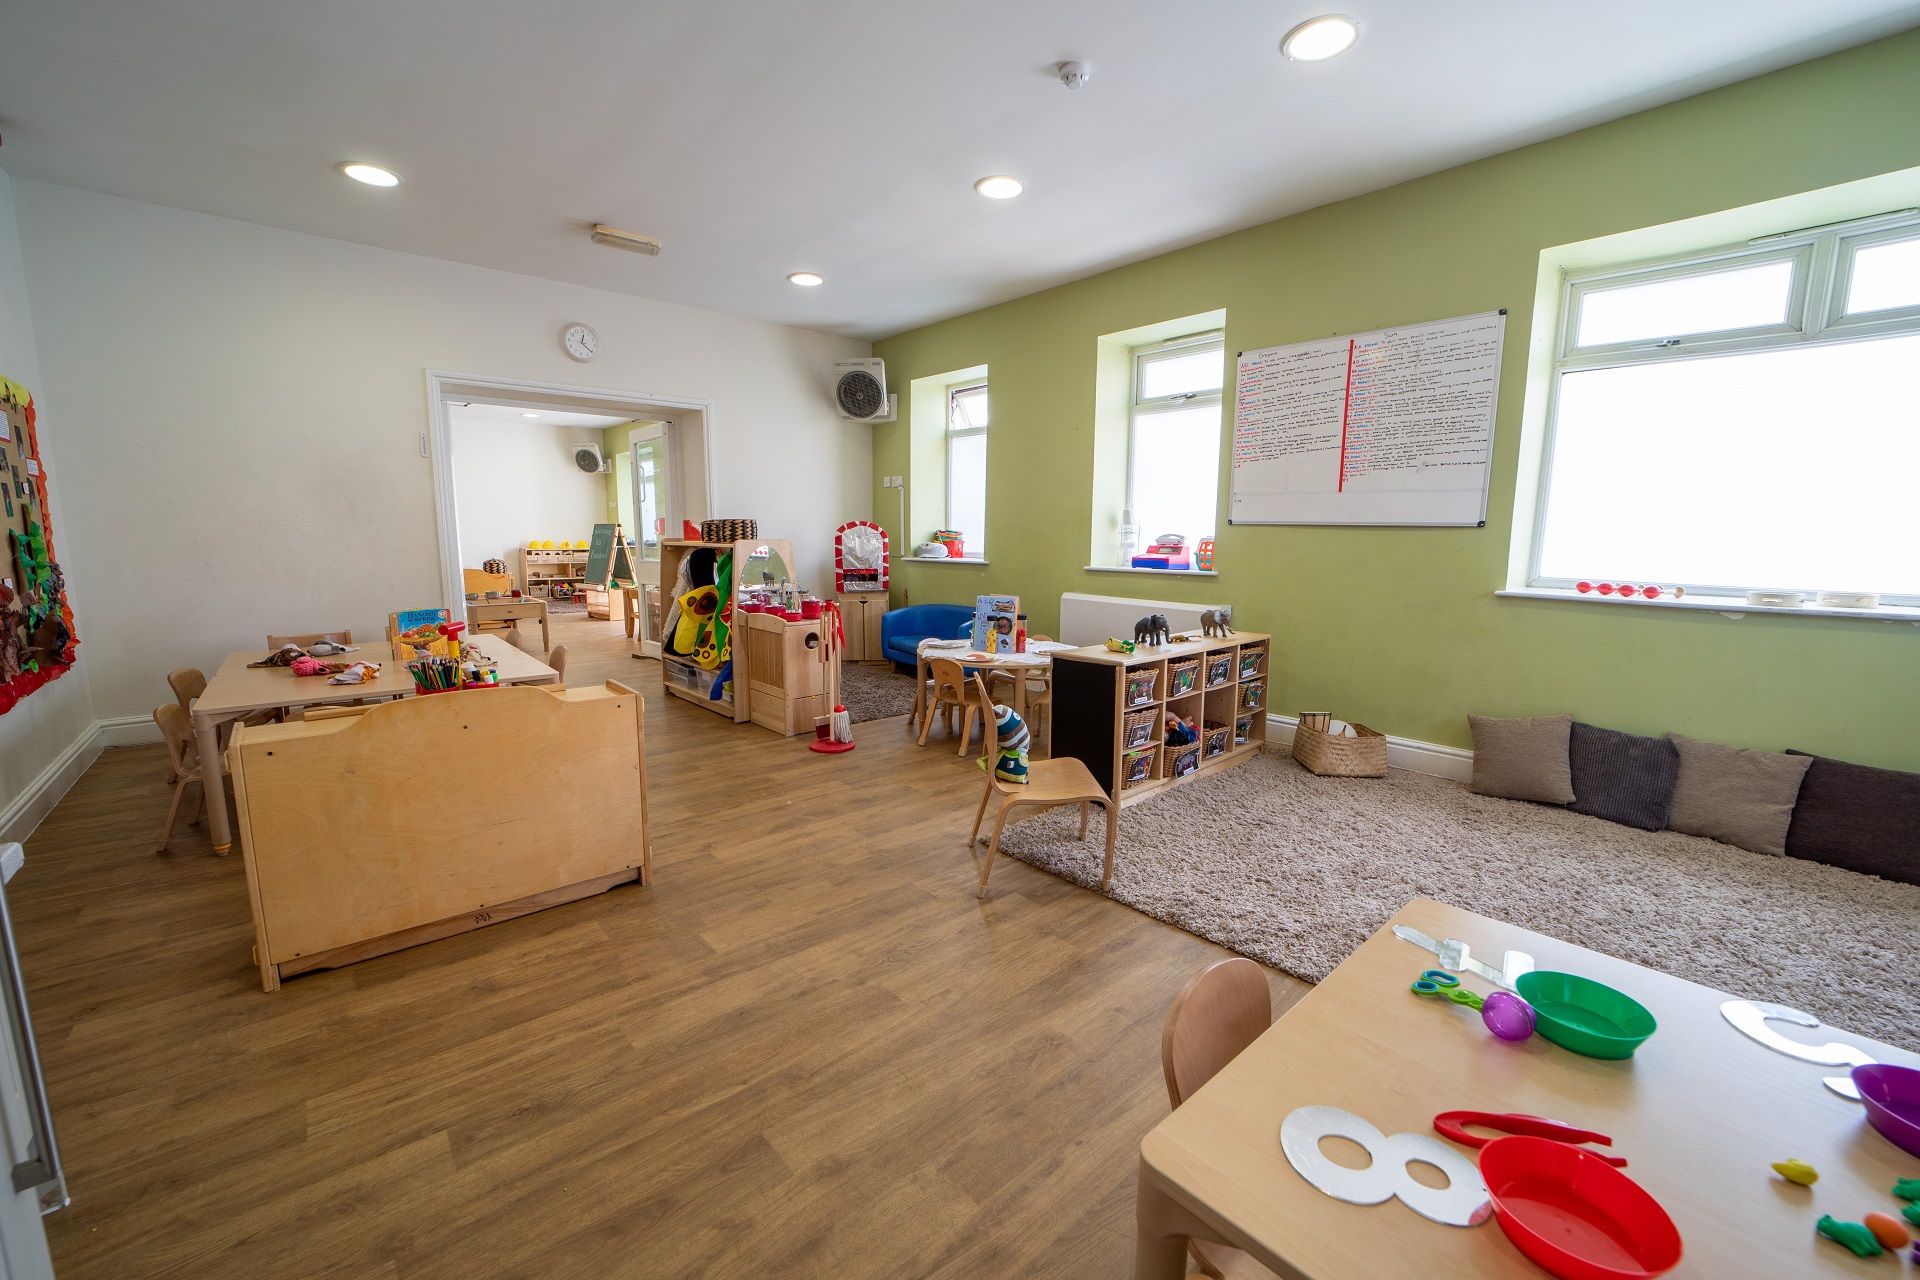 New Southgate Nursery images Preschool Room